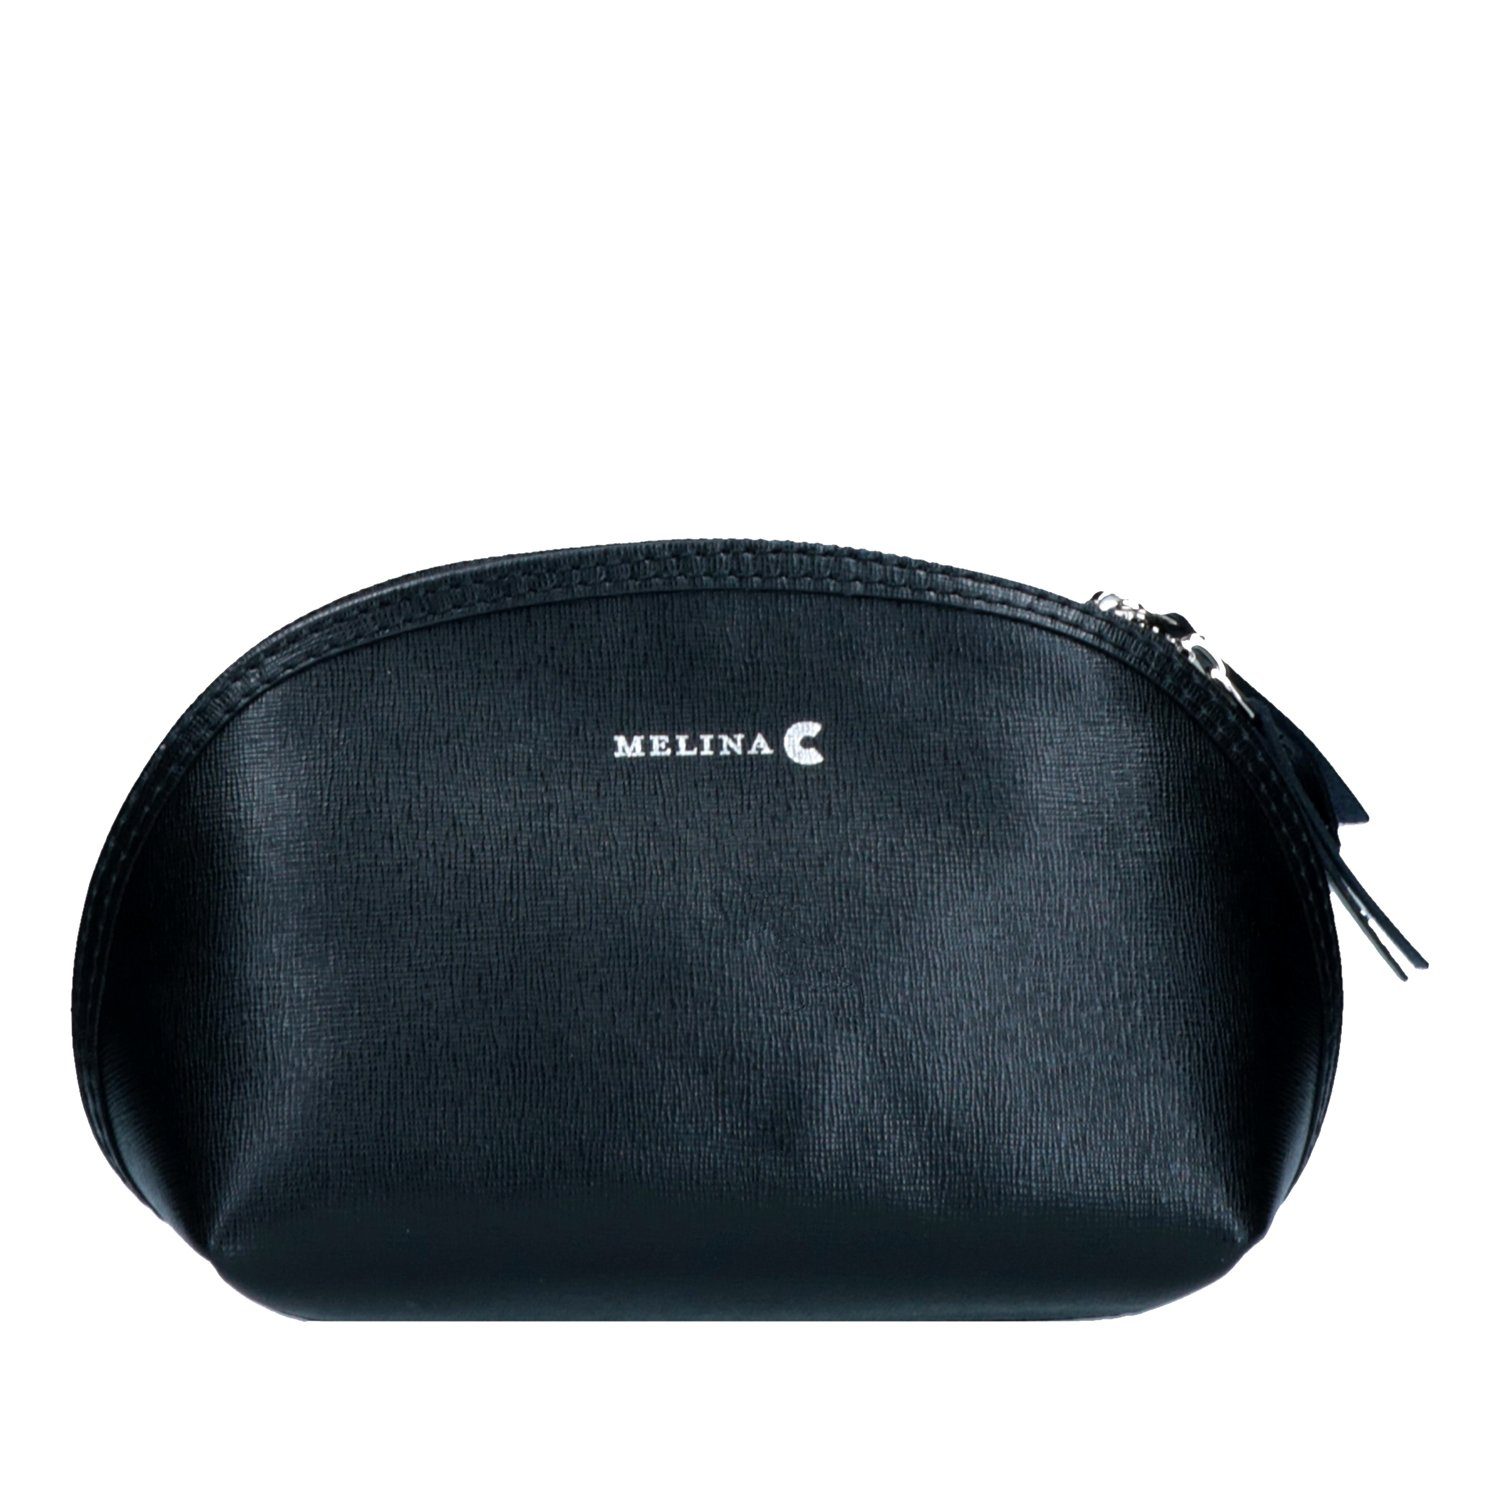 Verstellbare Melina Echtleder Schulter Tasche Schwarz C Kosmetiktasche, Umhängetasche Träger Melina C